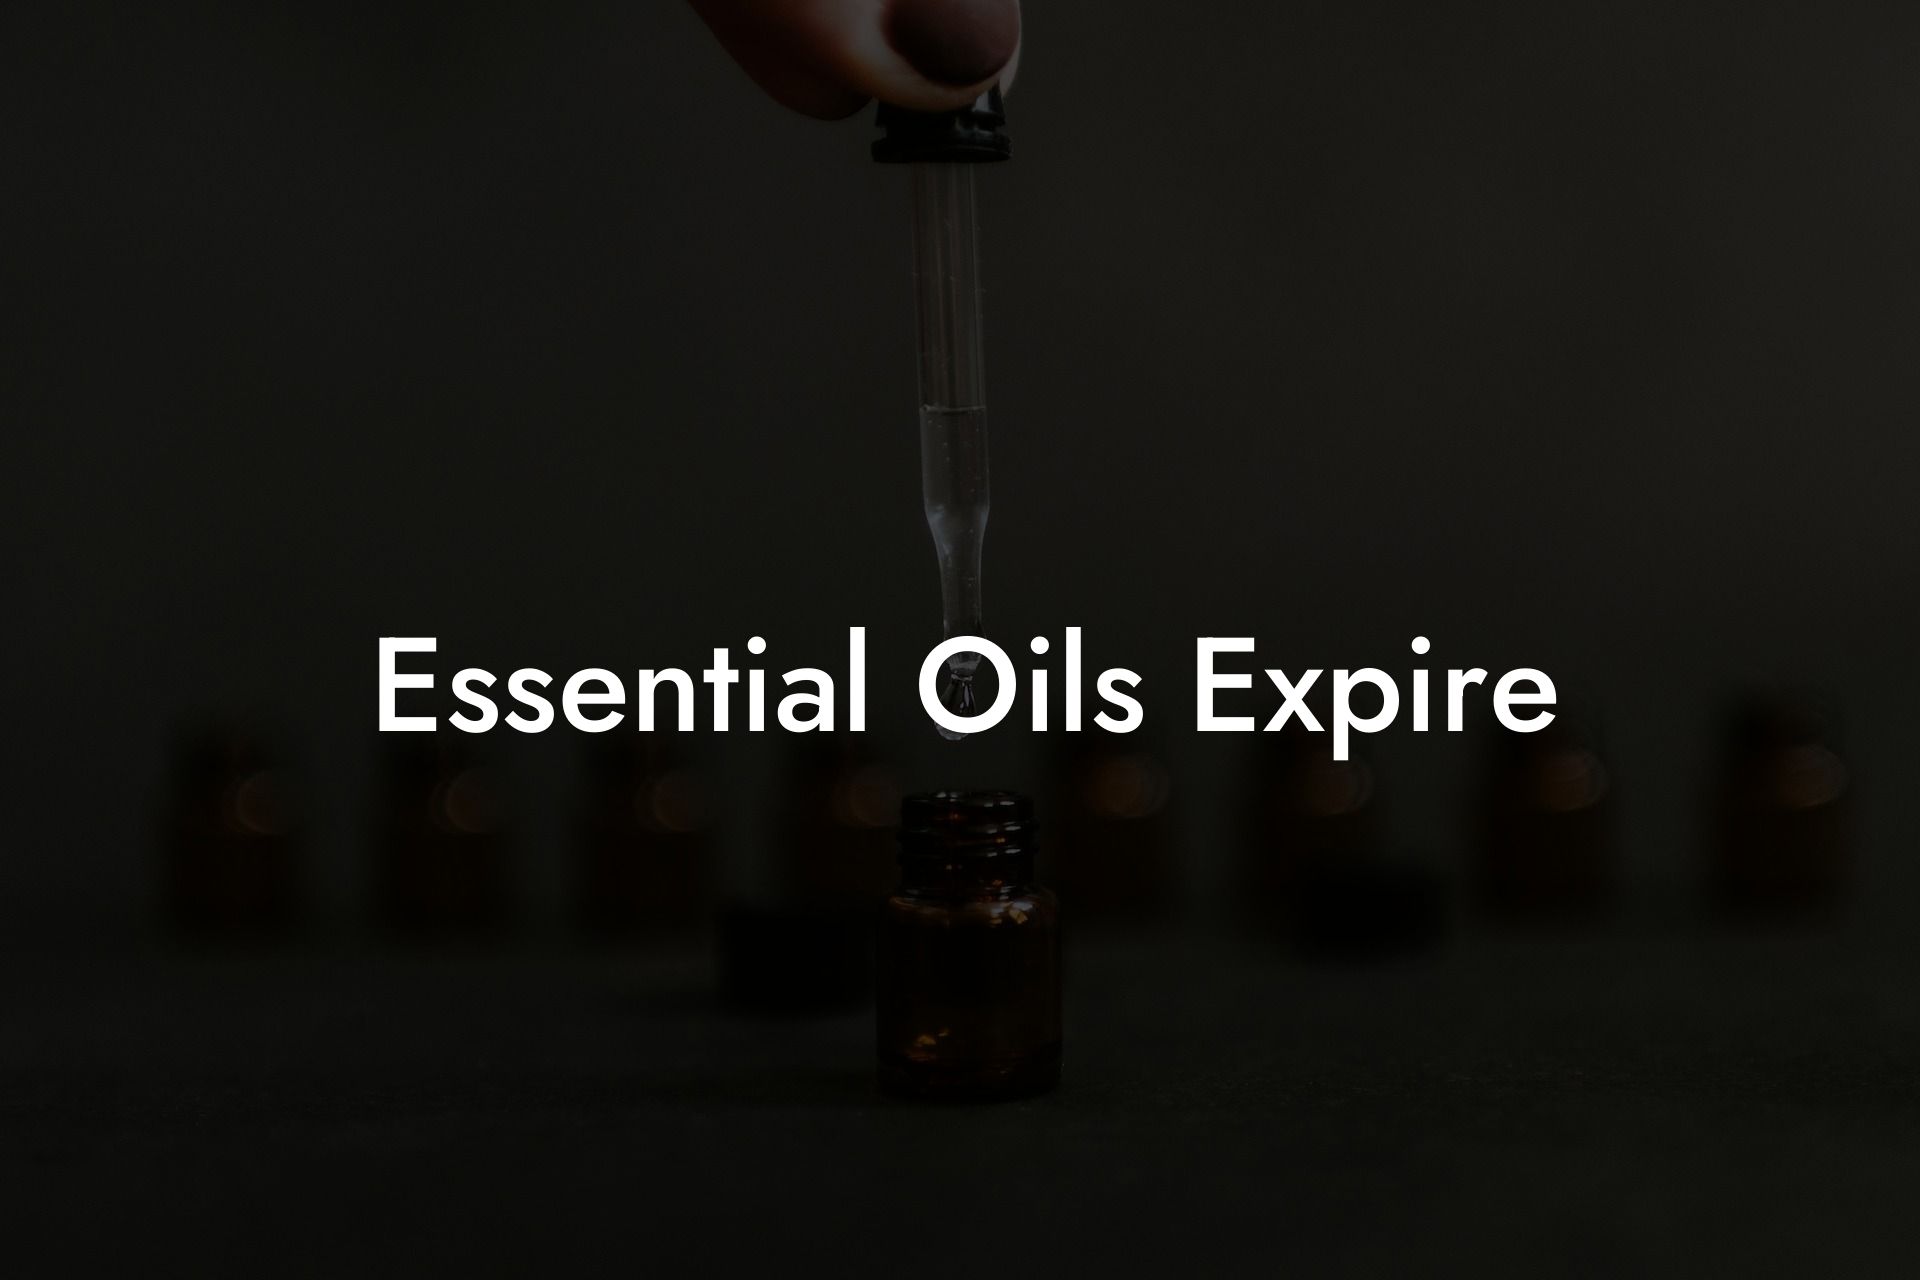 Essential Oils Expire